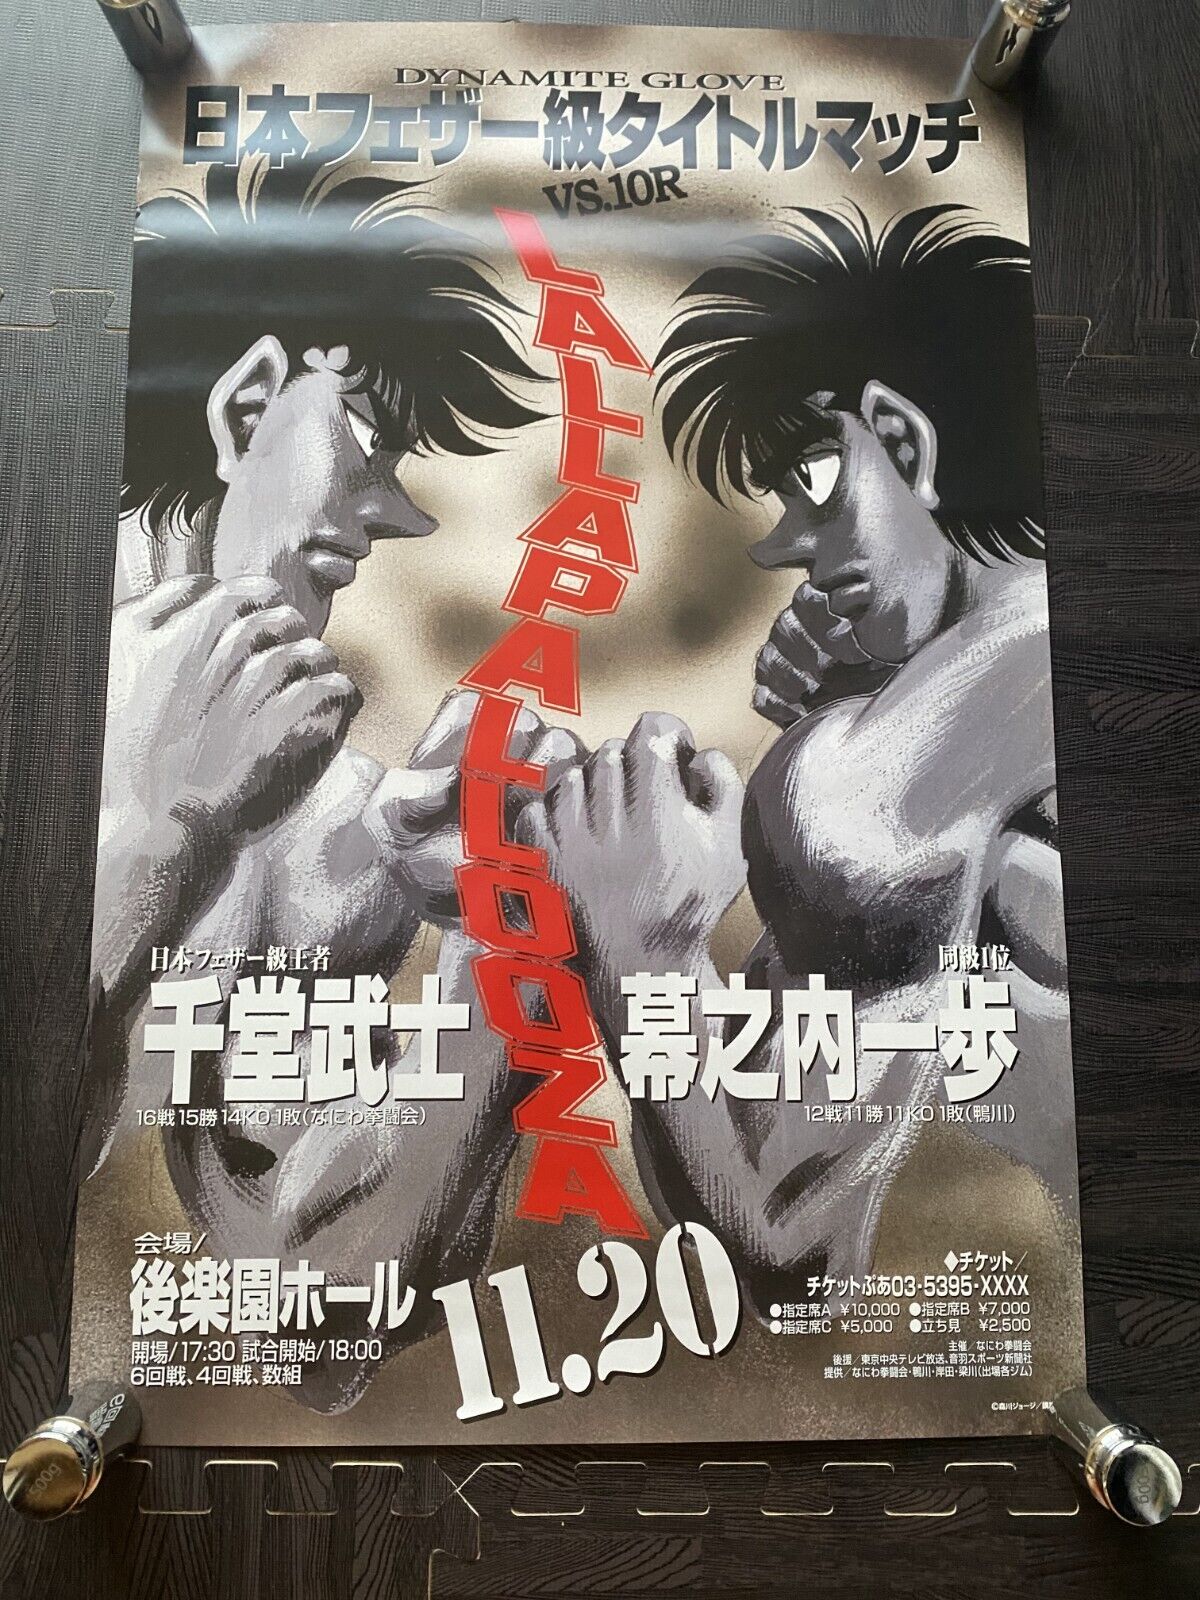 Fighting Spirit Hajime no ippo Poster 480x728mm Ippo vs Sendo for Japan title